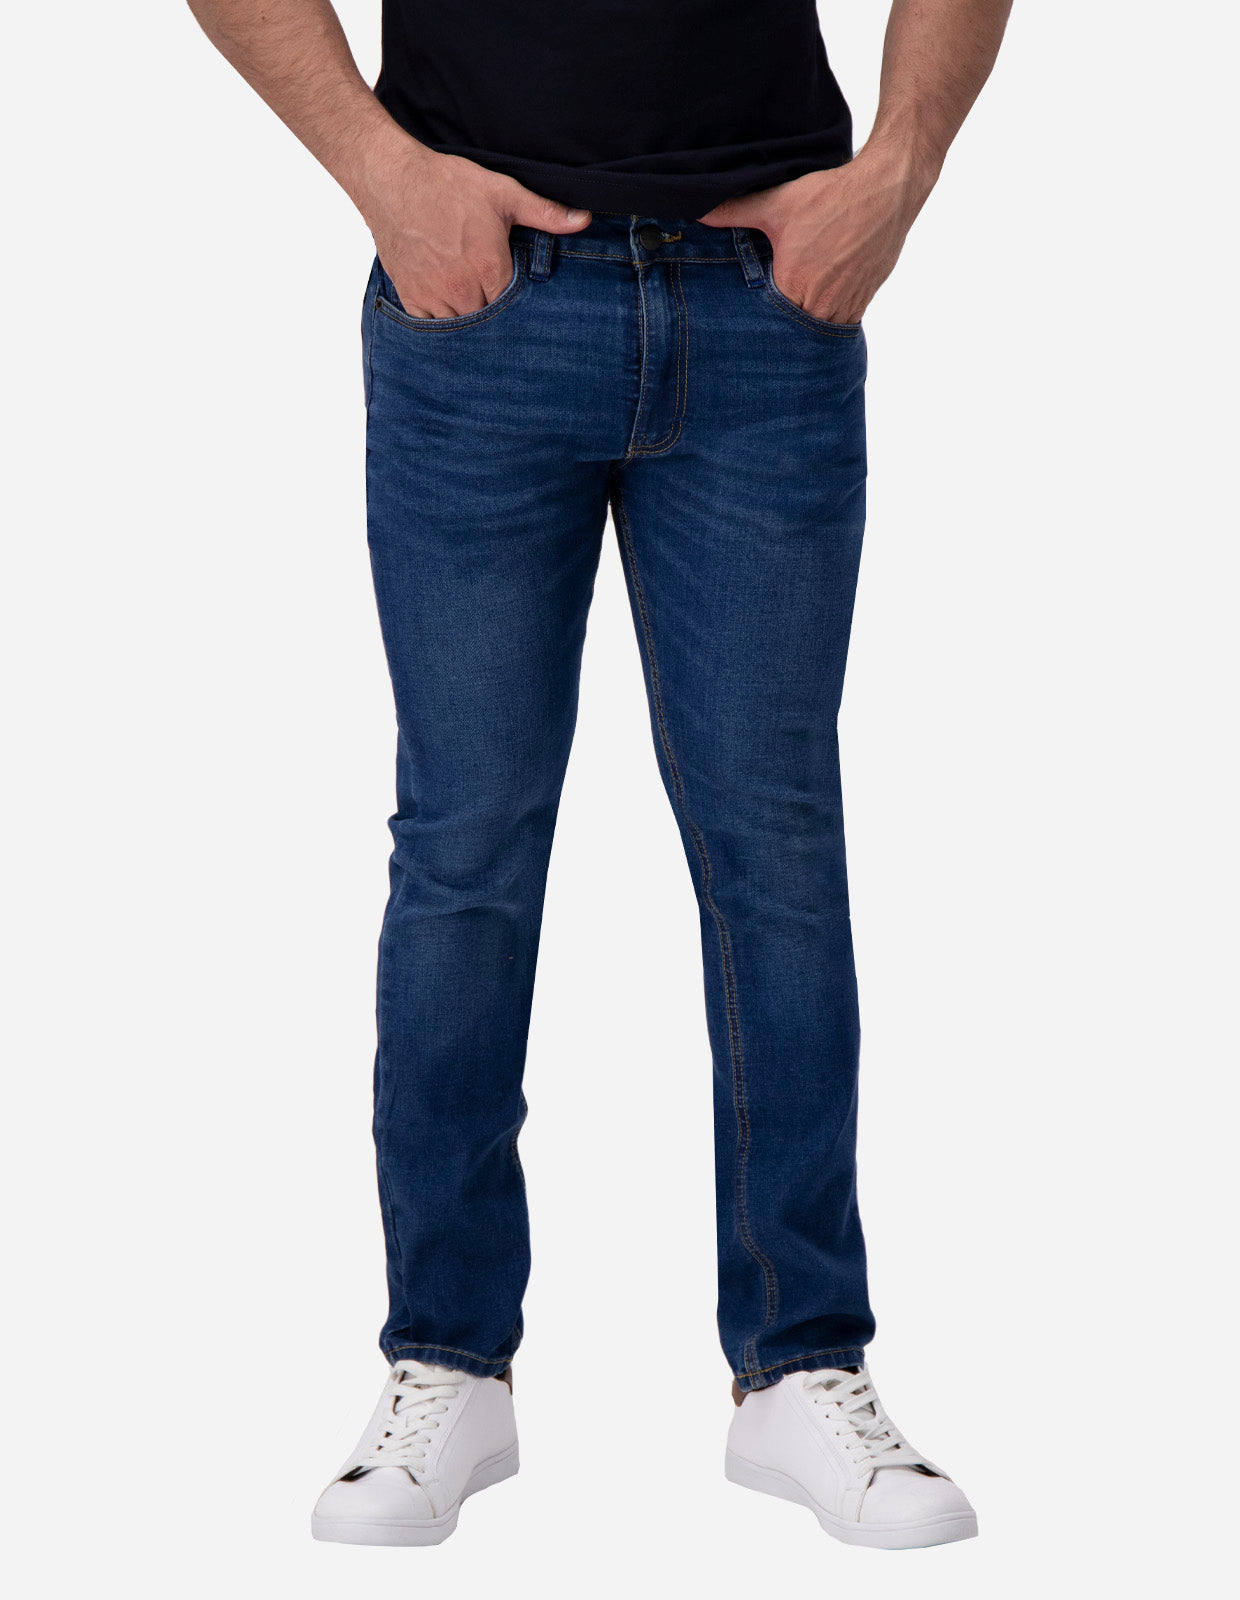 Jeans de Mezclilla Slim Fit - Denver